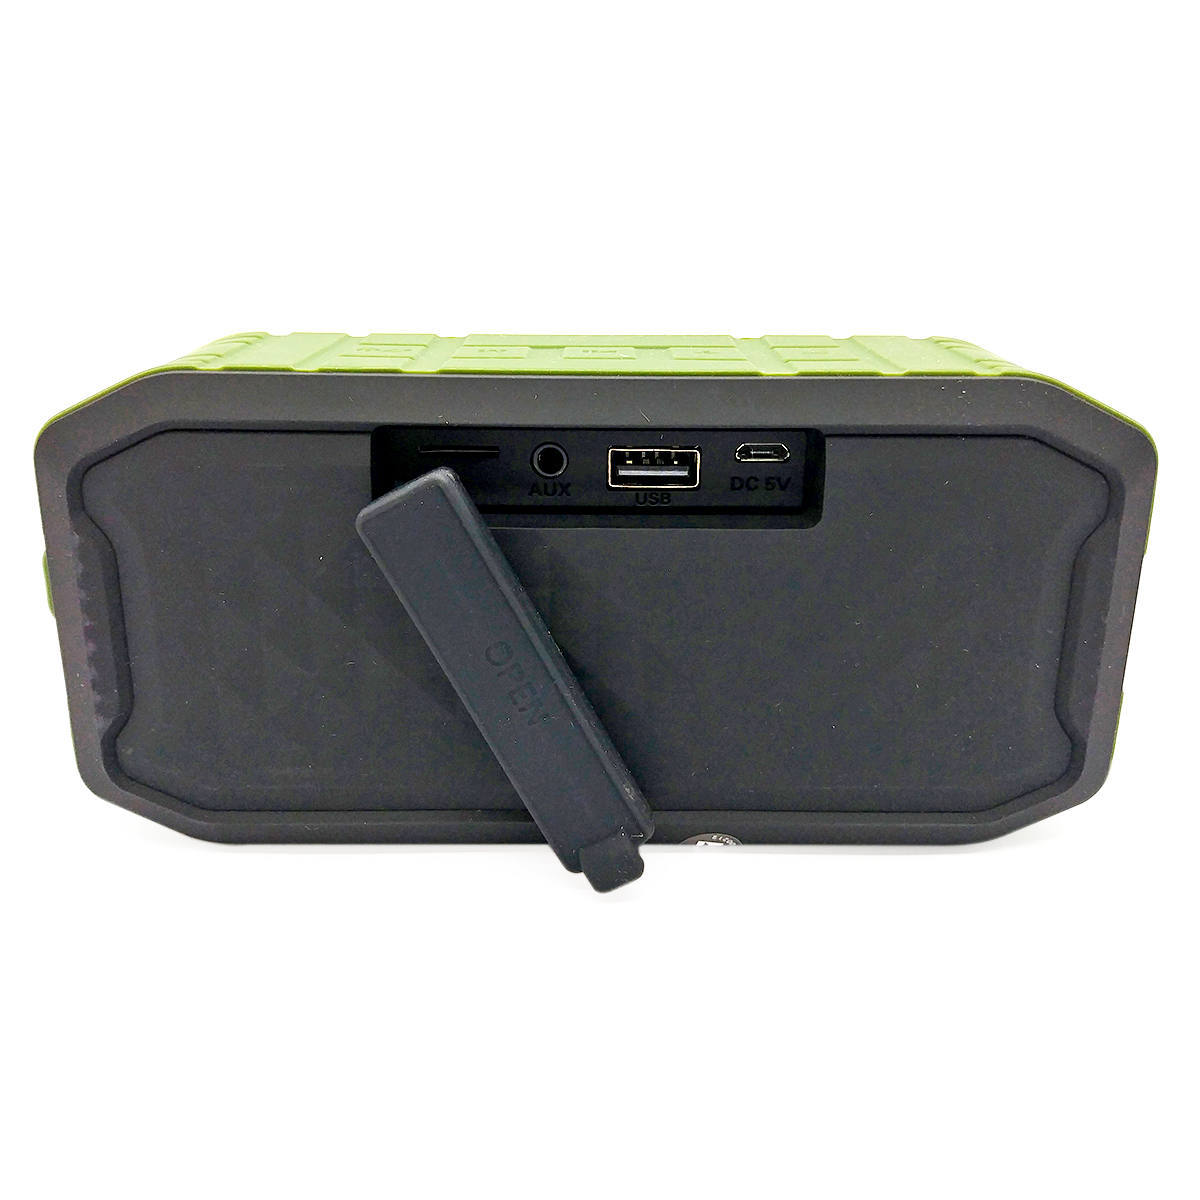 Caixa de Som à Prova d'Água IPX7 Portátil Bluetooth Acabamento Emborrachado FM USB SD P2 Exbom Panzer CS-M86BT Verde